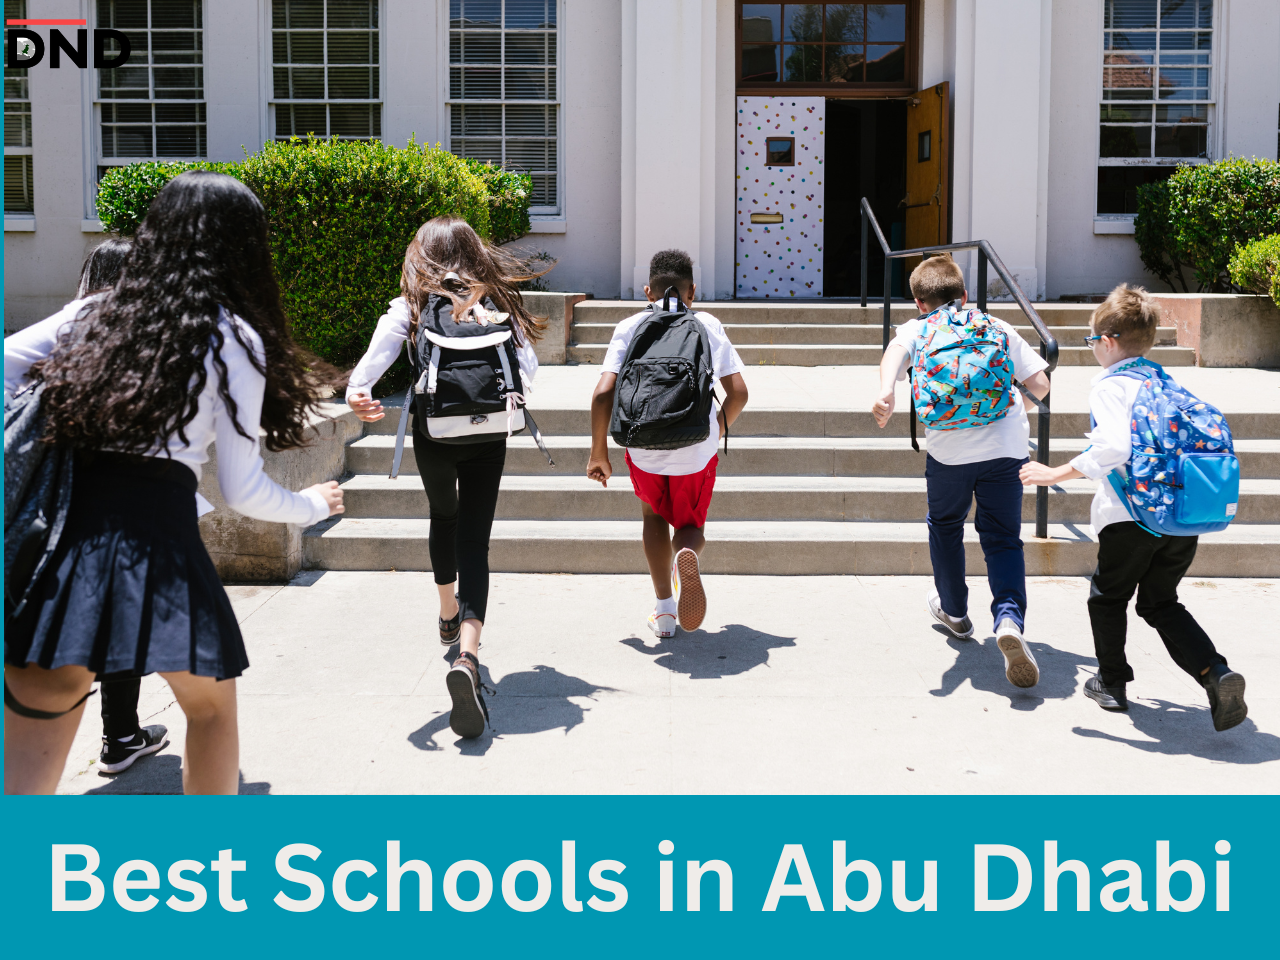 List of best schools in Abu Dhabi